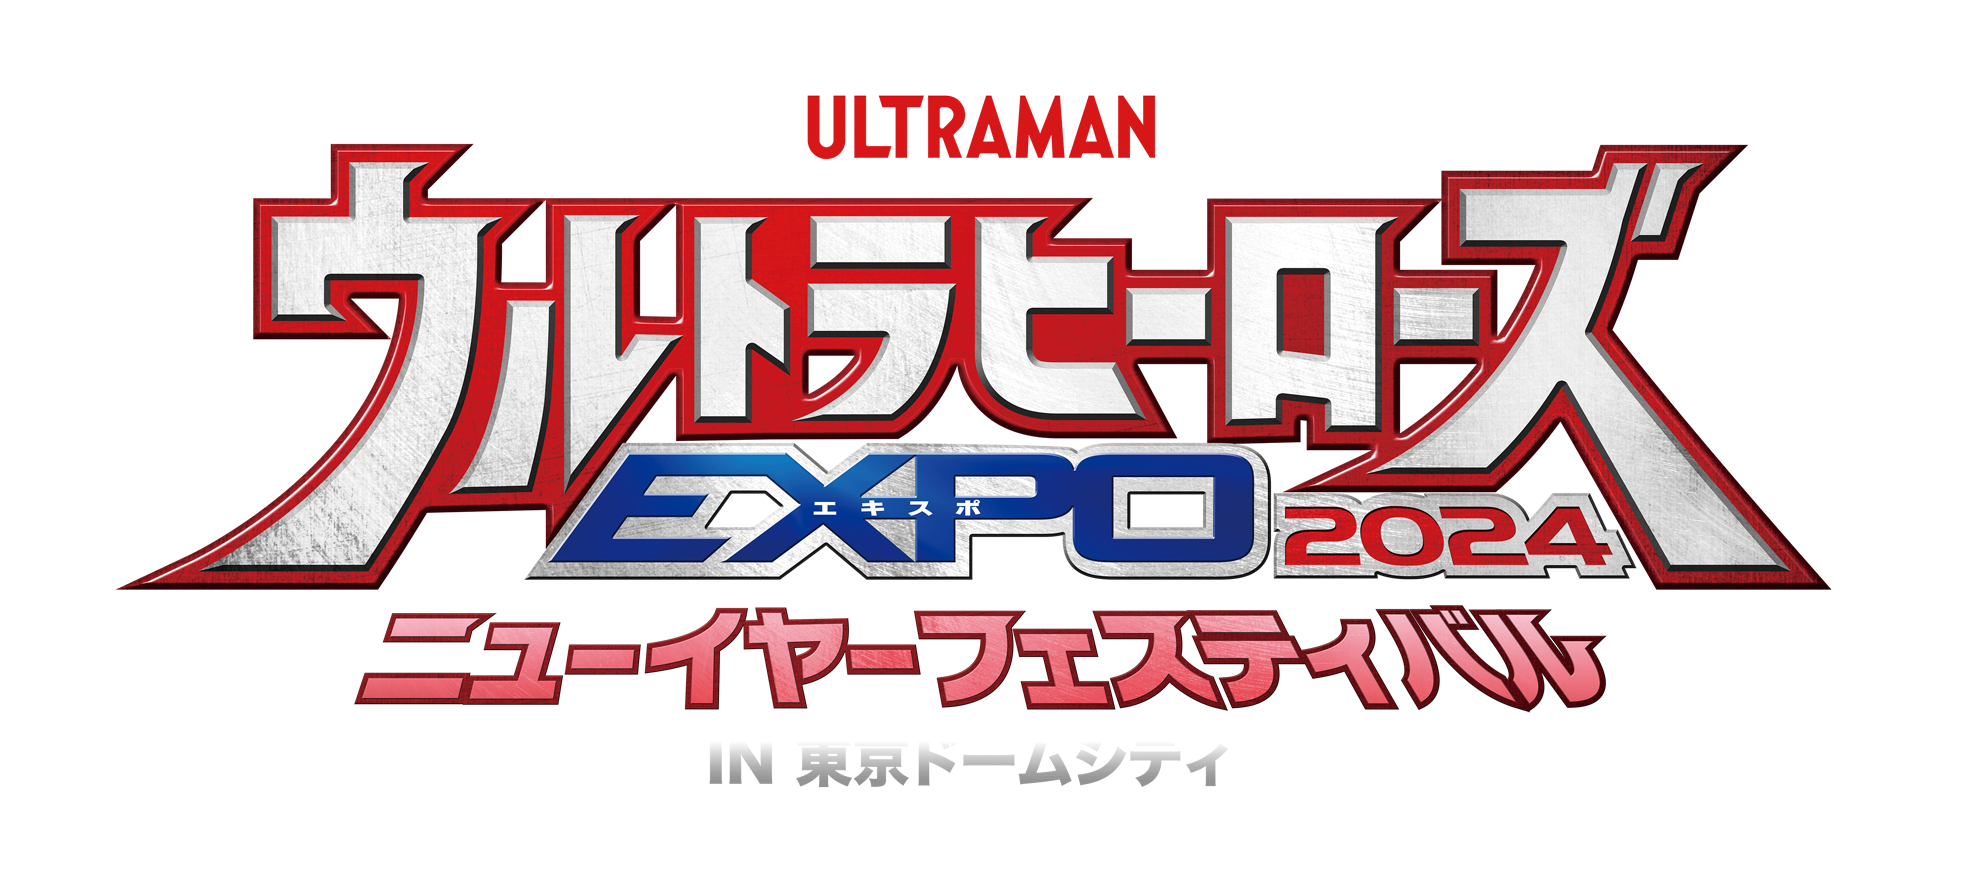 ウルトラヒーローズEXPO 2023 ニューイヤーフェスティバル in 東京ドームシティ